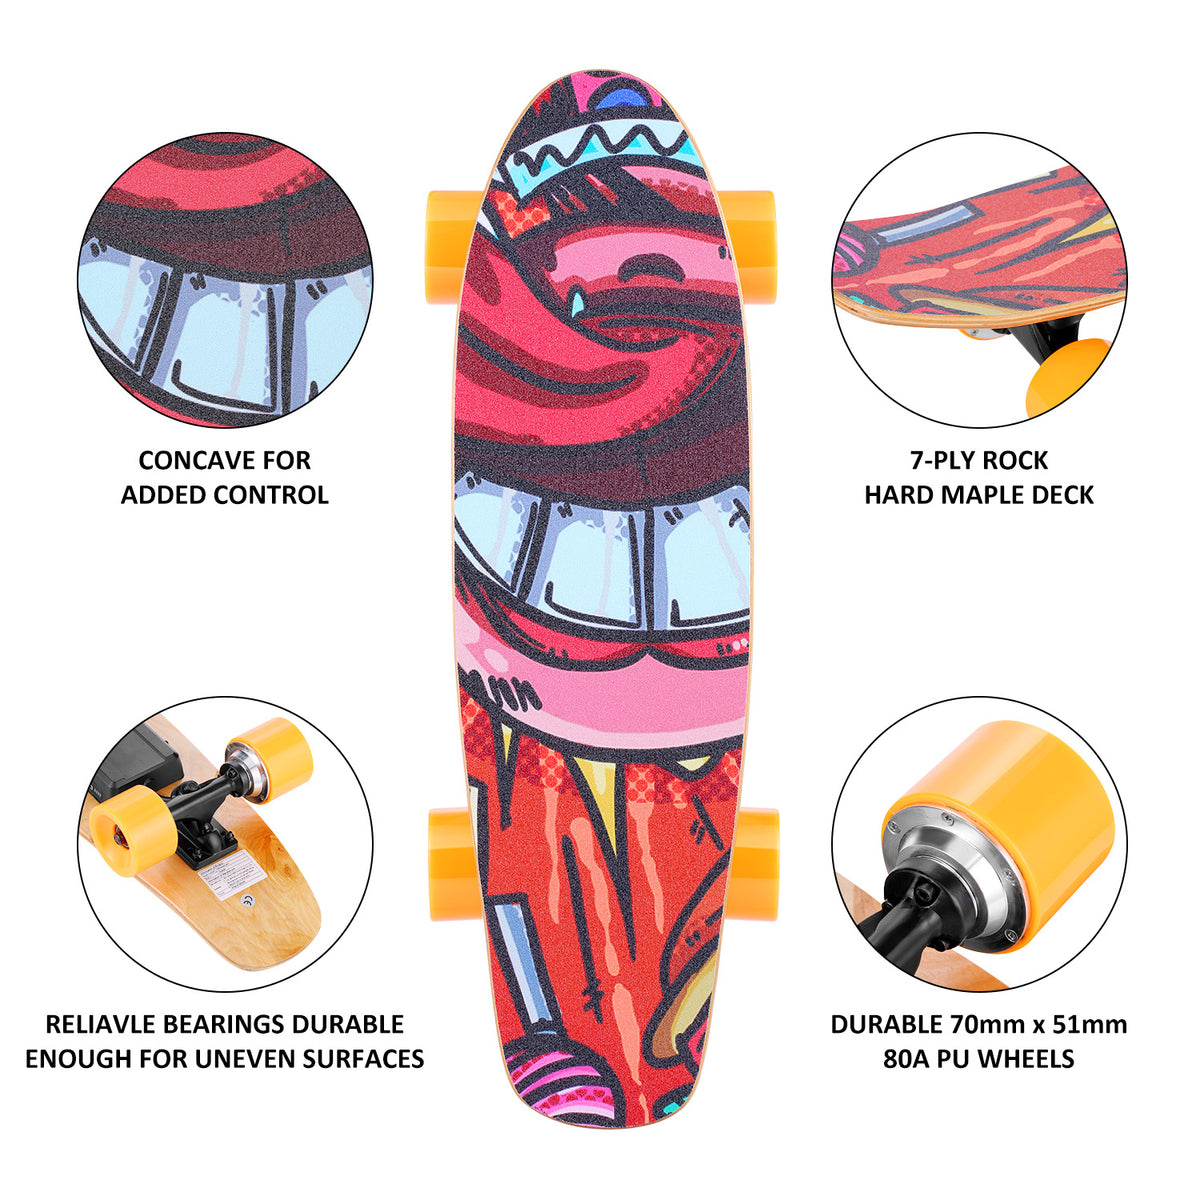 YUEBO Elektro-Skateboard mit kabelloser Fernbedienung, 350 W, max. 12,4 MPH, 7-lagiges E-Skateboard aus Ahornholz, 3 Geschwindigkeitsstufen für Erwachsene, Jugendliche und Kinder, Orange 